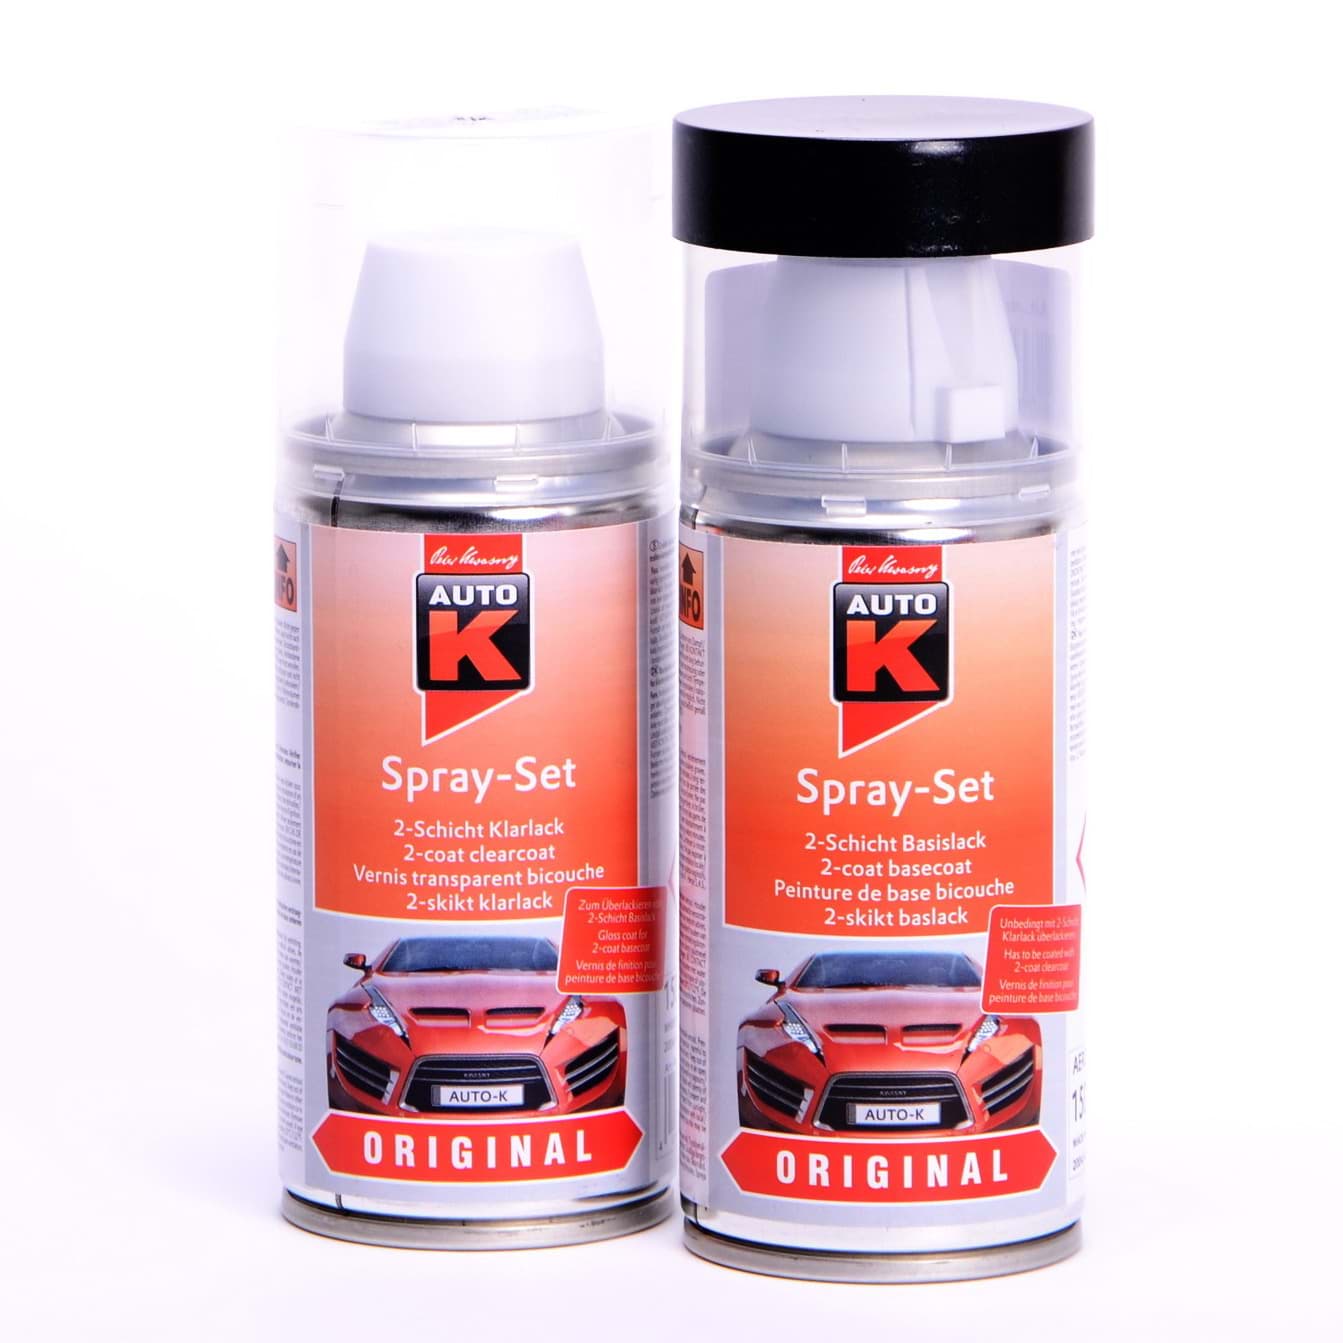 Afbeelding van Auto-K Spray-Set Autolack für Volkswagen, VW, Audi L041 Schwarz 20645